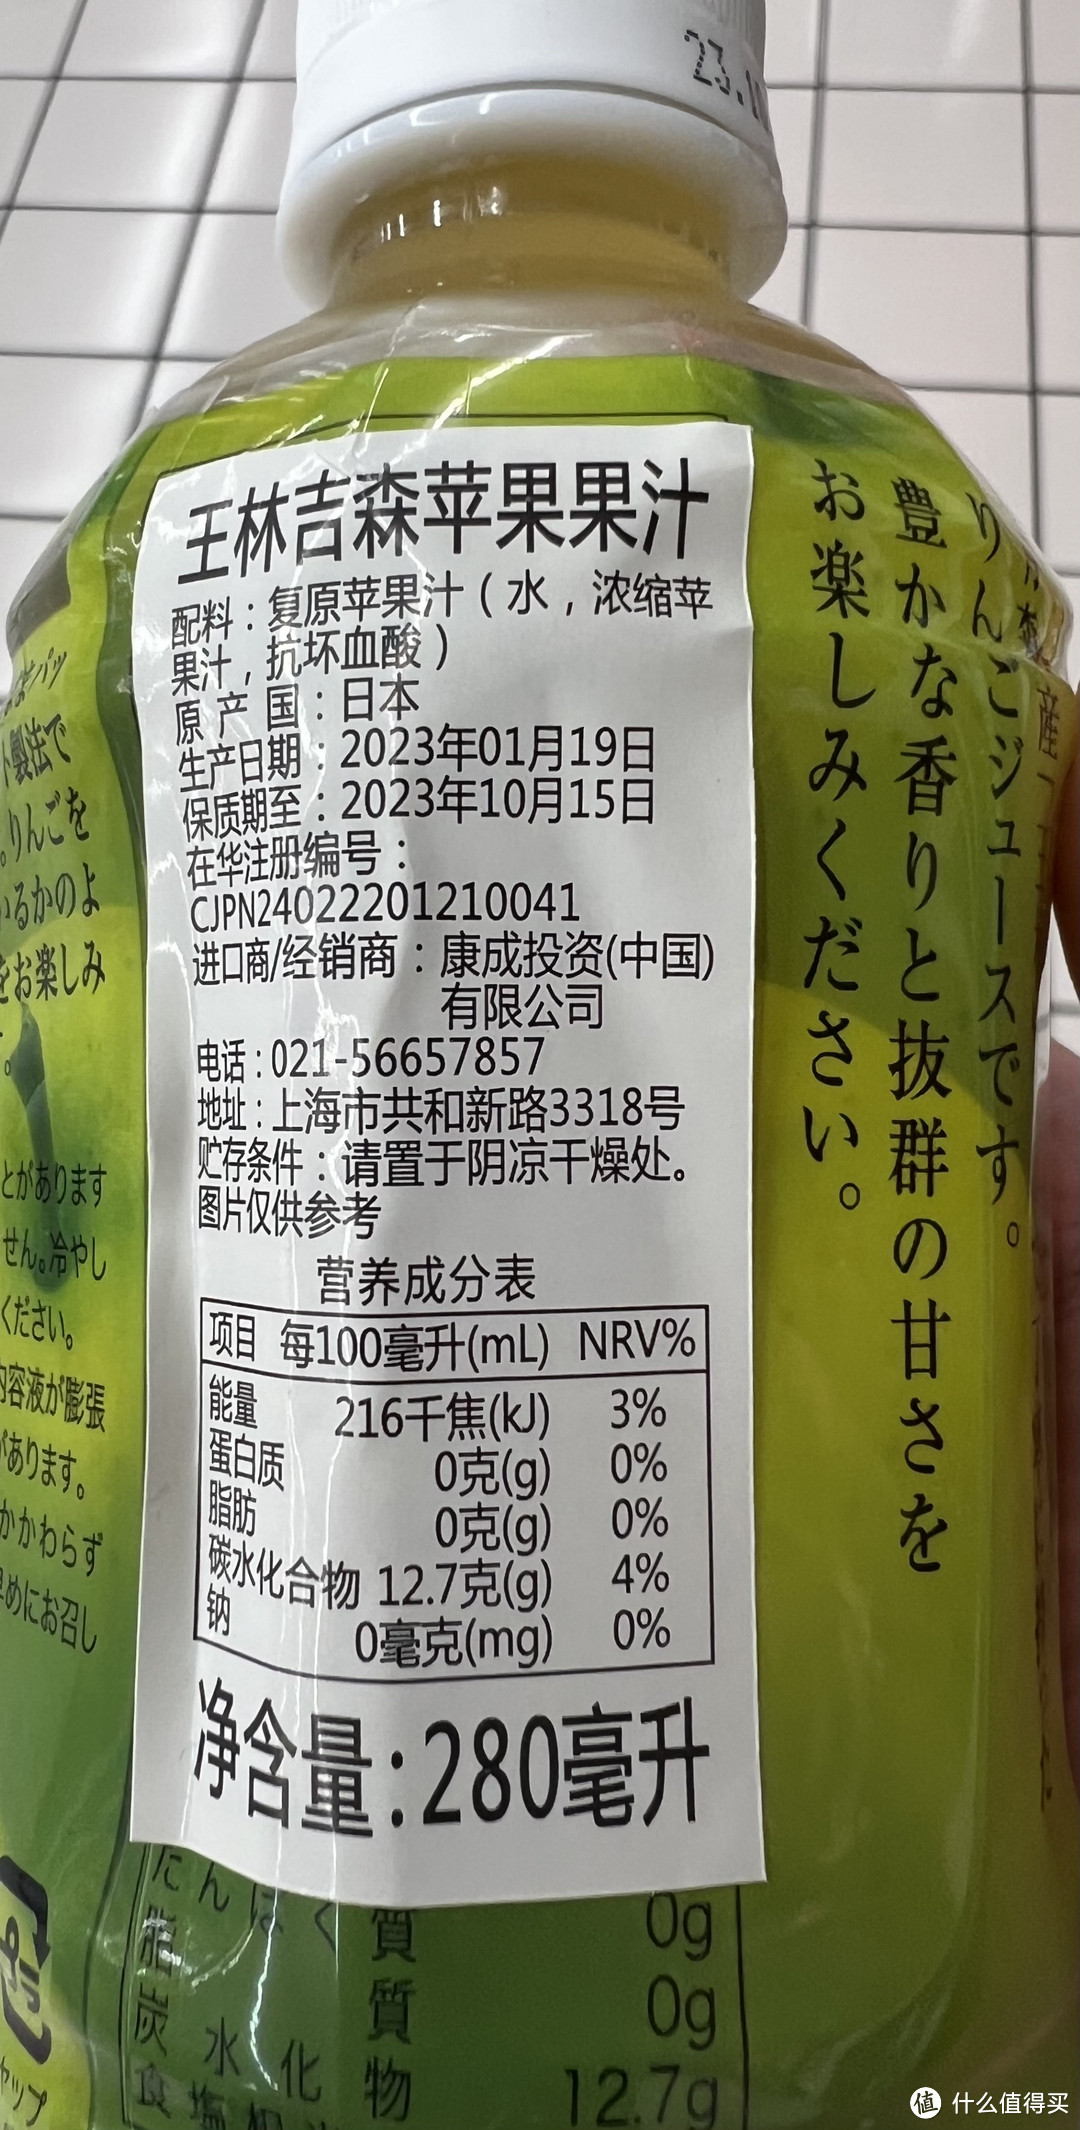 我估计大部分都不知道的一款苹果汁饮料——青森王林苹果汁饮料！